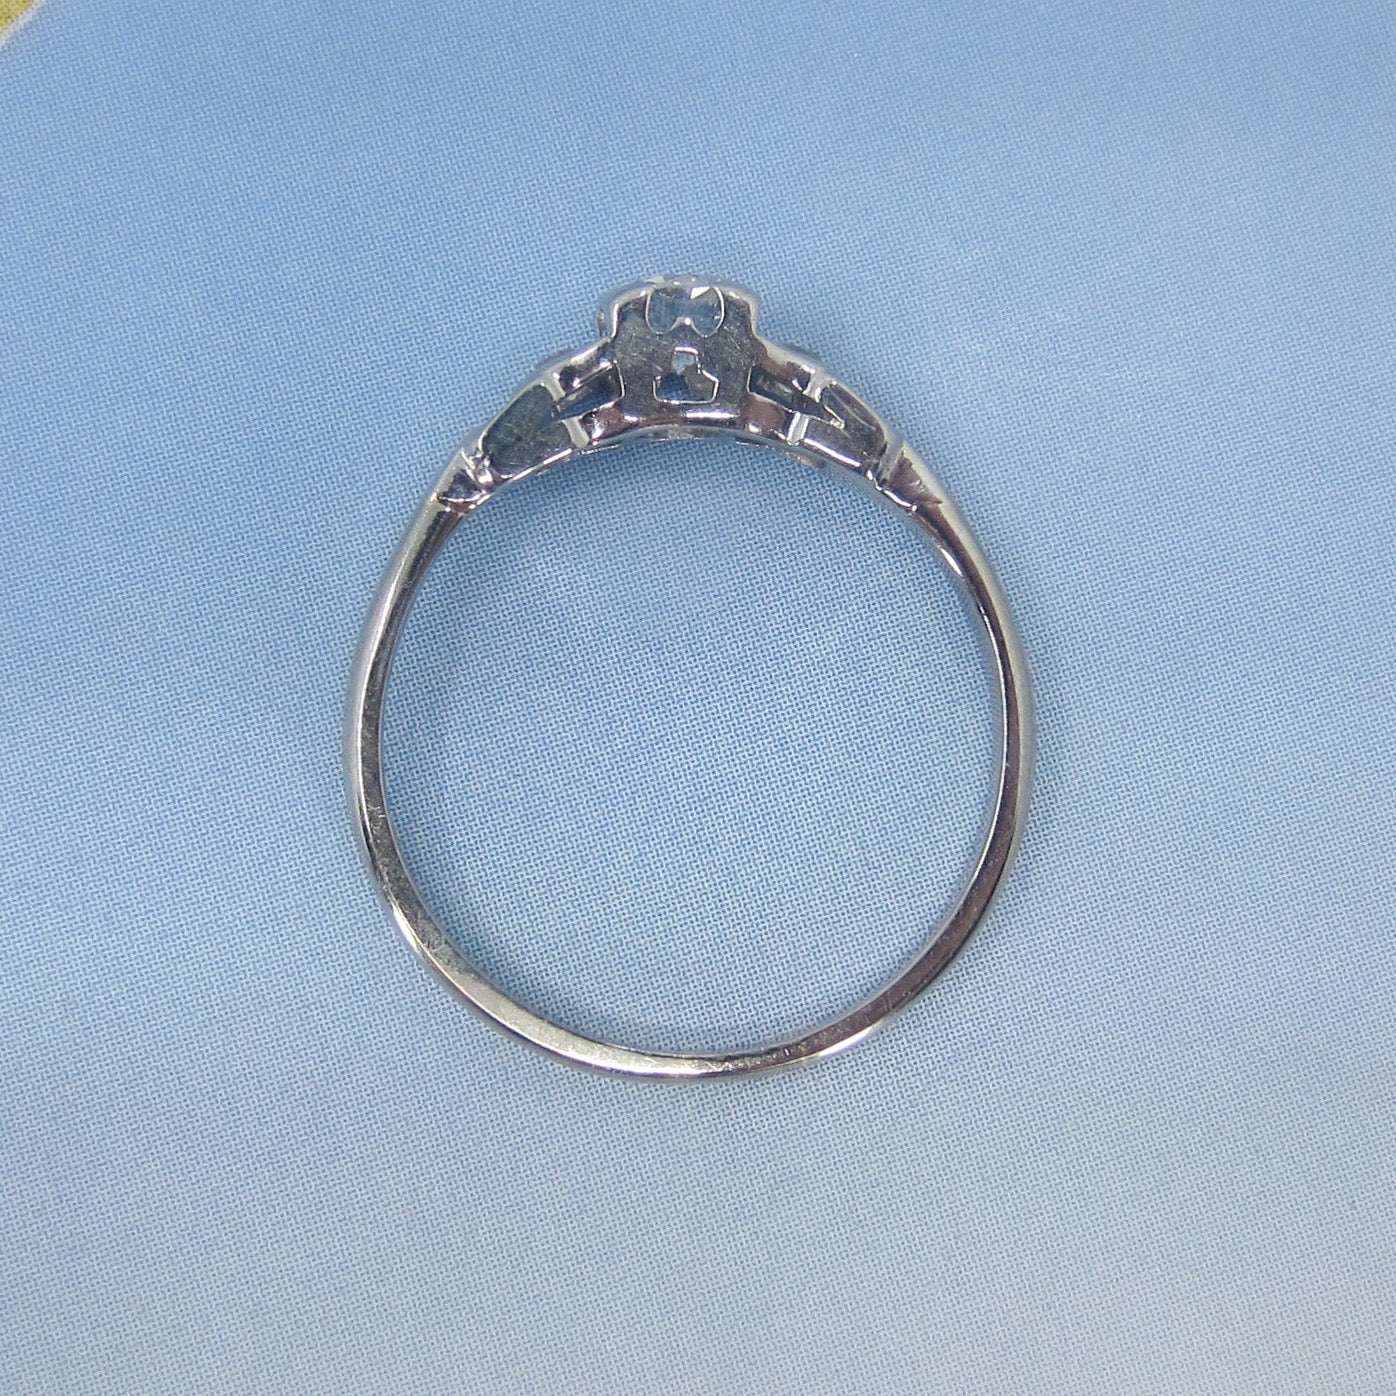 Art Deco Transitional Round Brilliant .40ct Diamond Engagement Ring Platinum/18k c. 1930